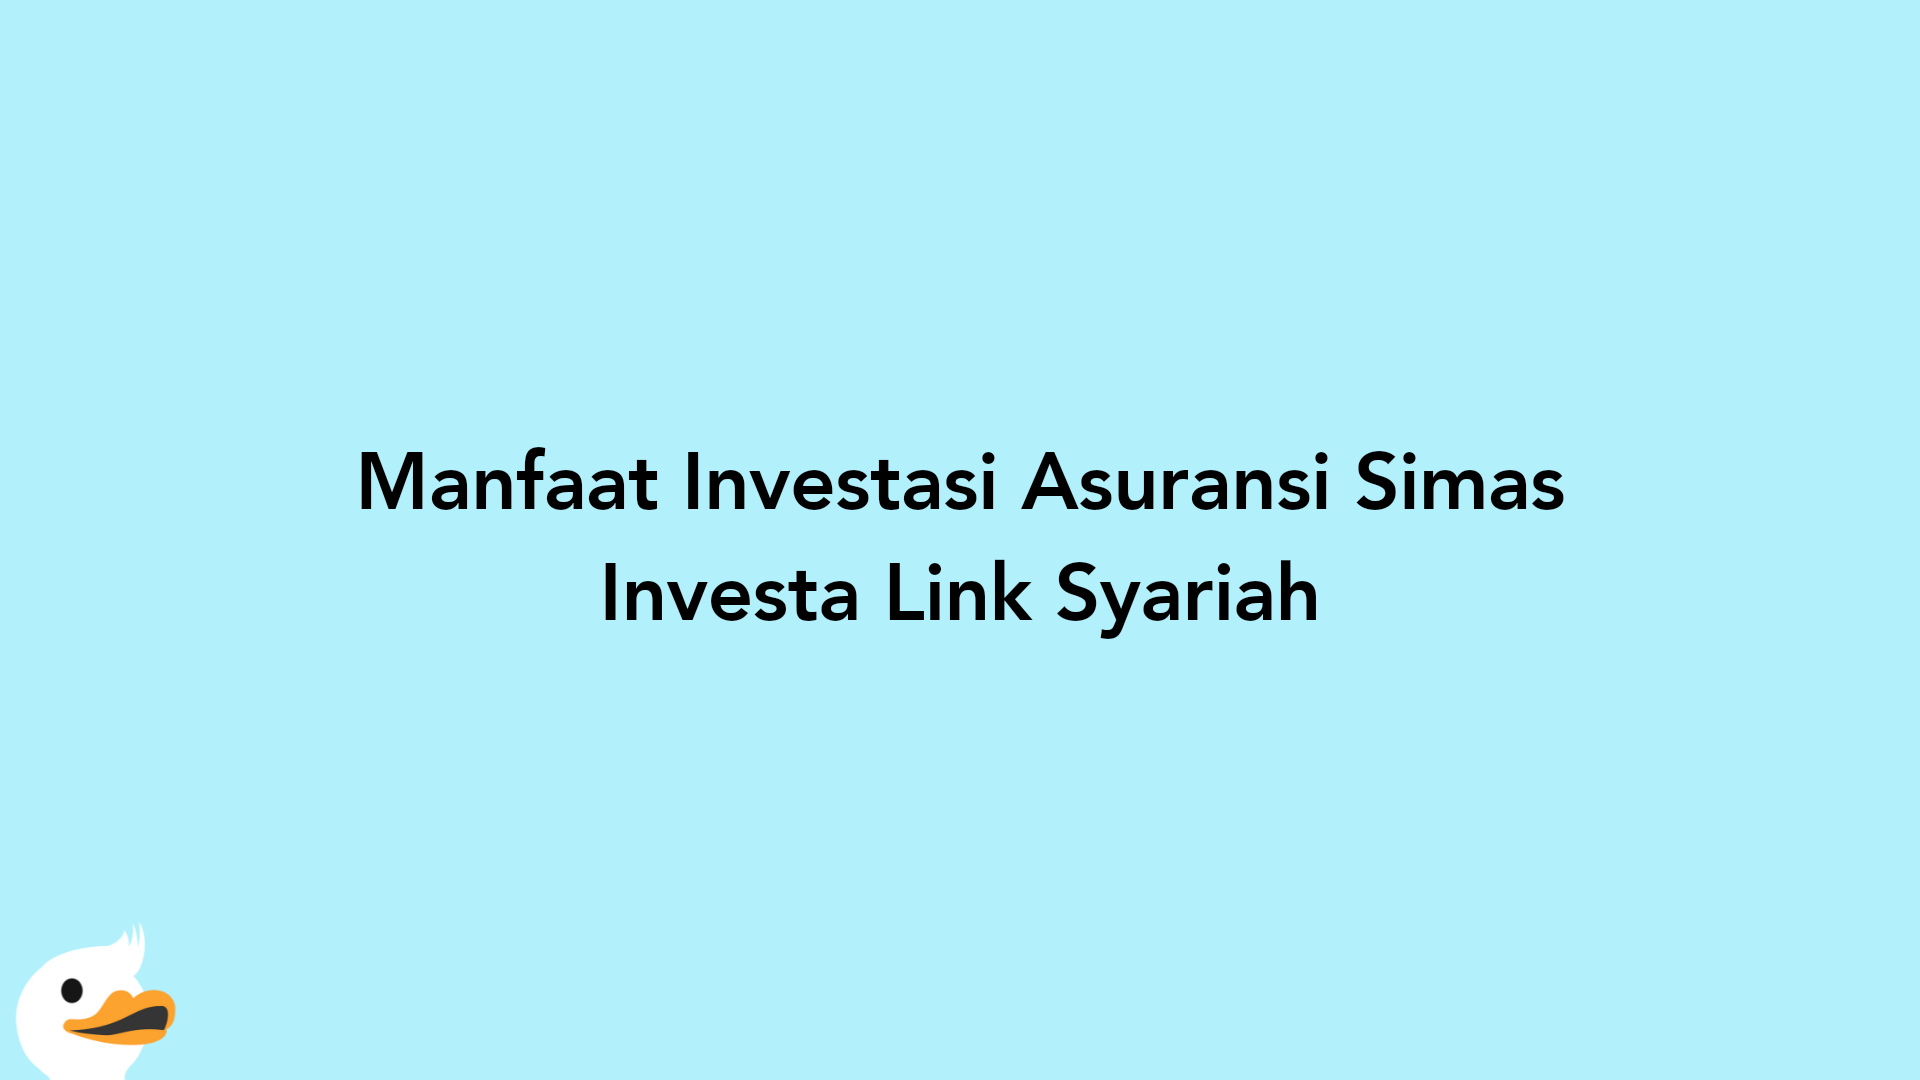 Manfaat Investasi Asuransi Simas Investa Link Syariah